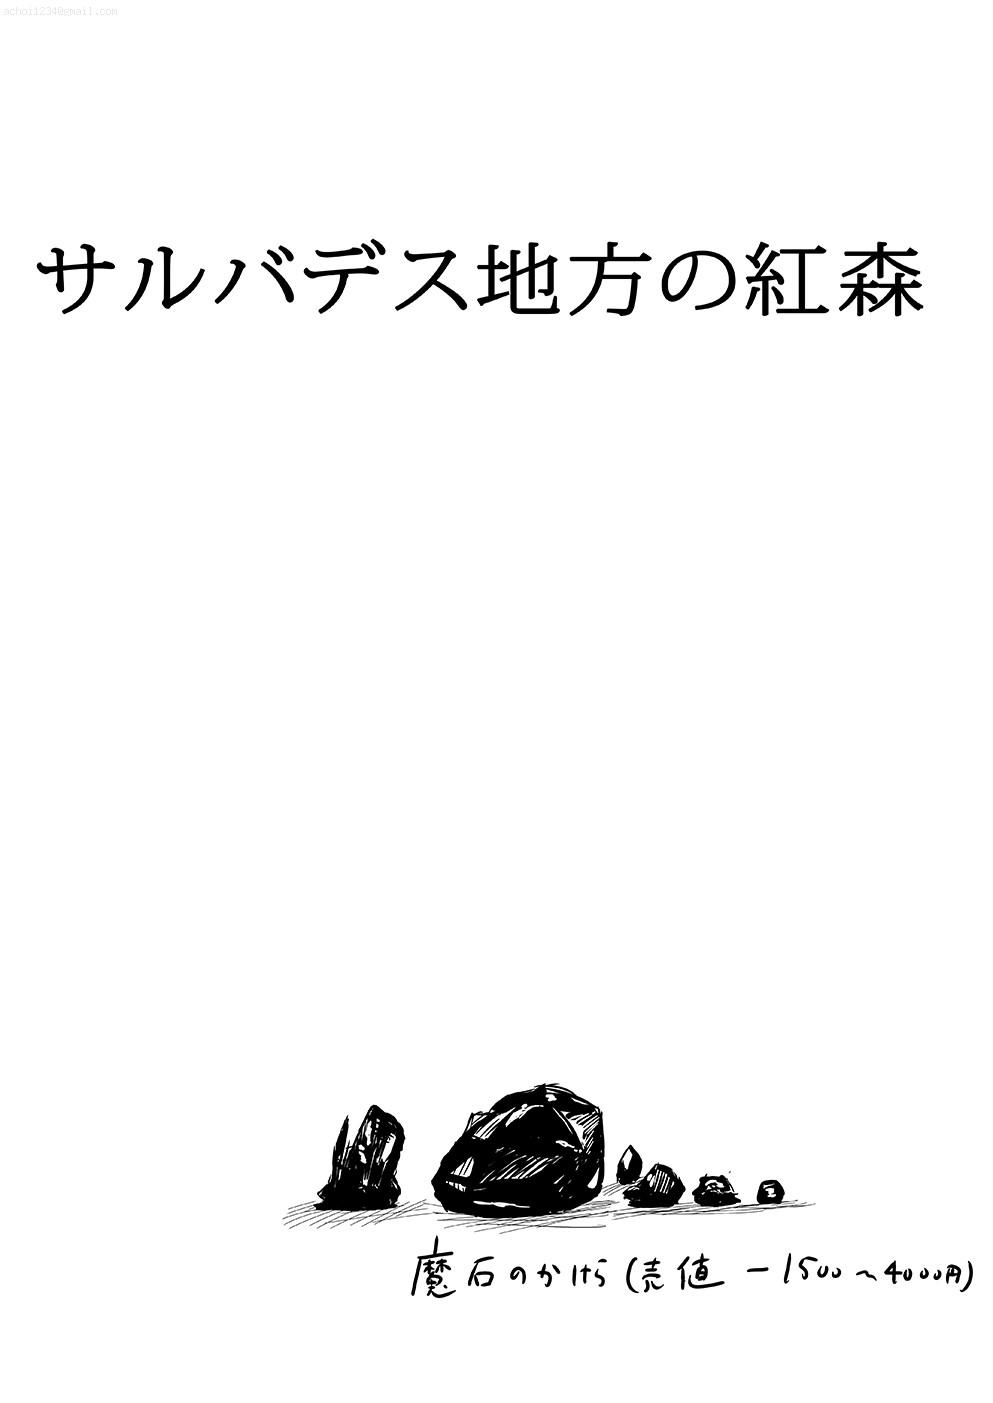 No Condom Sarubadesu Chihou no Akamori Gozando - Page 2